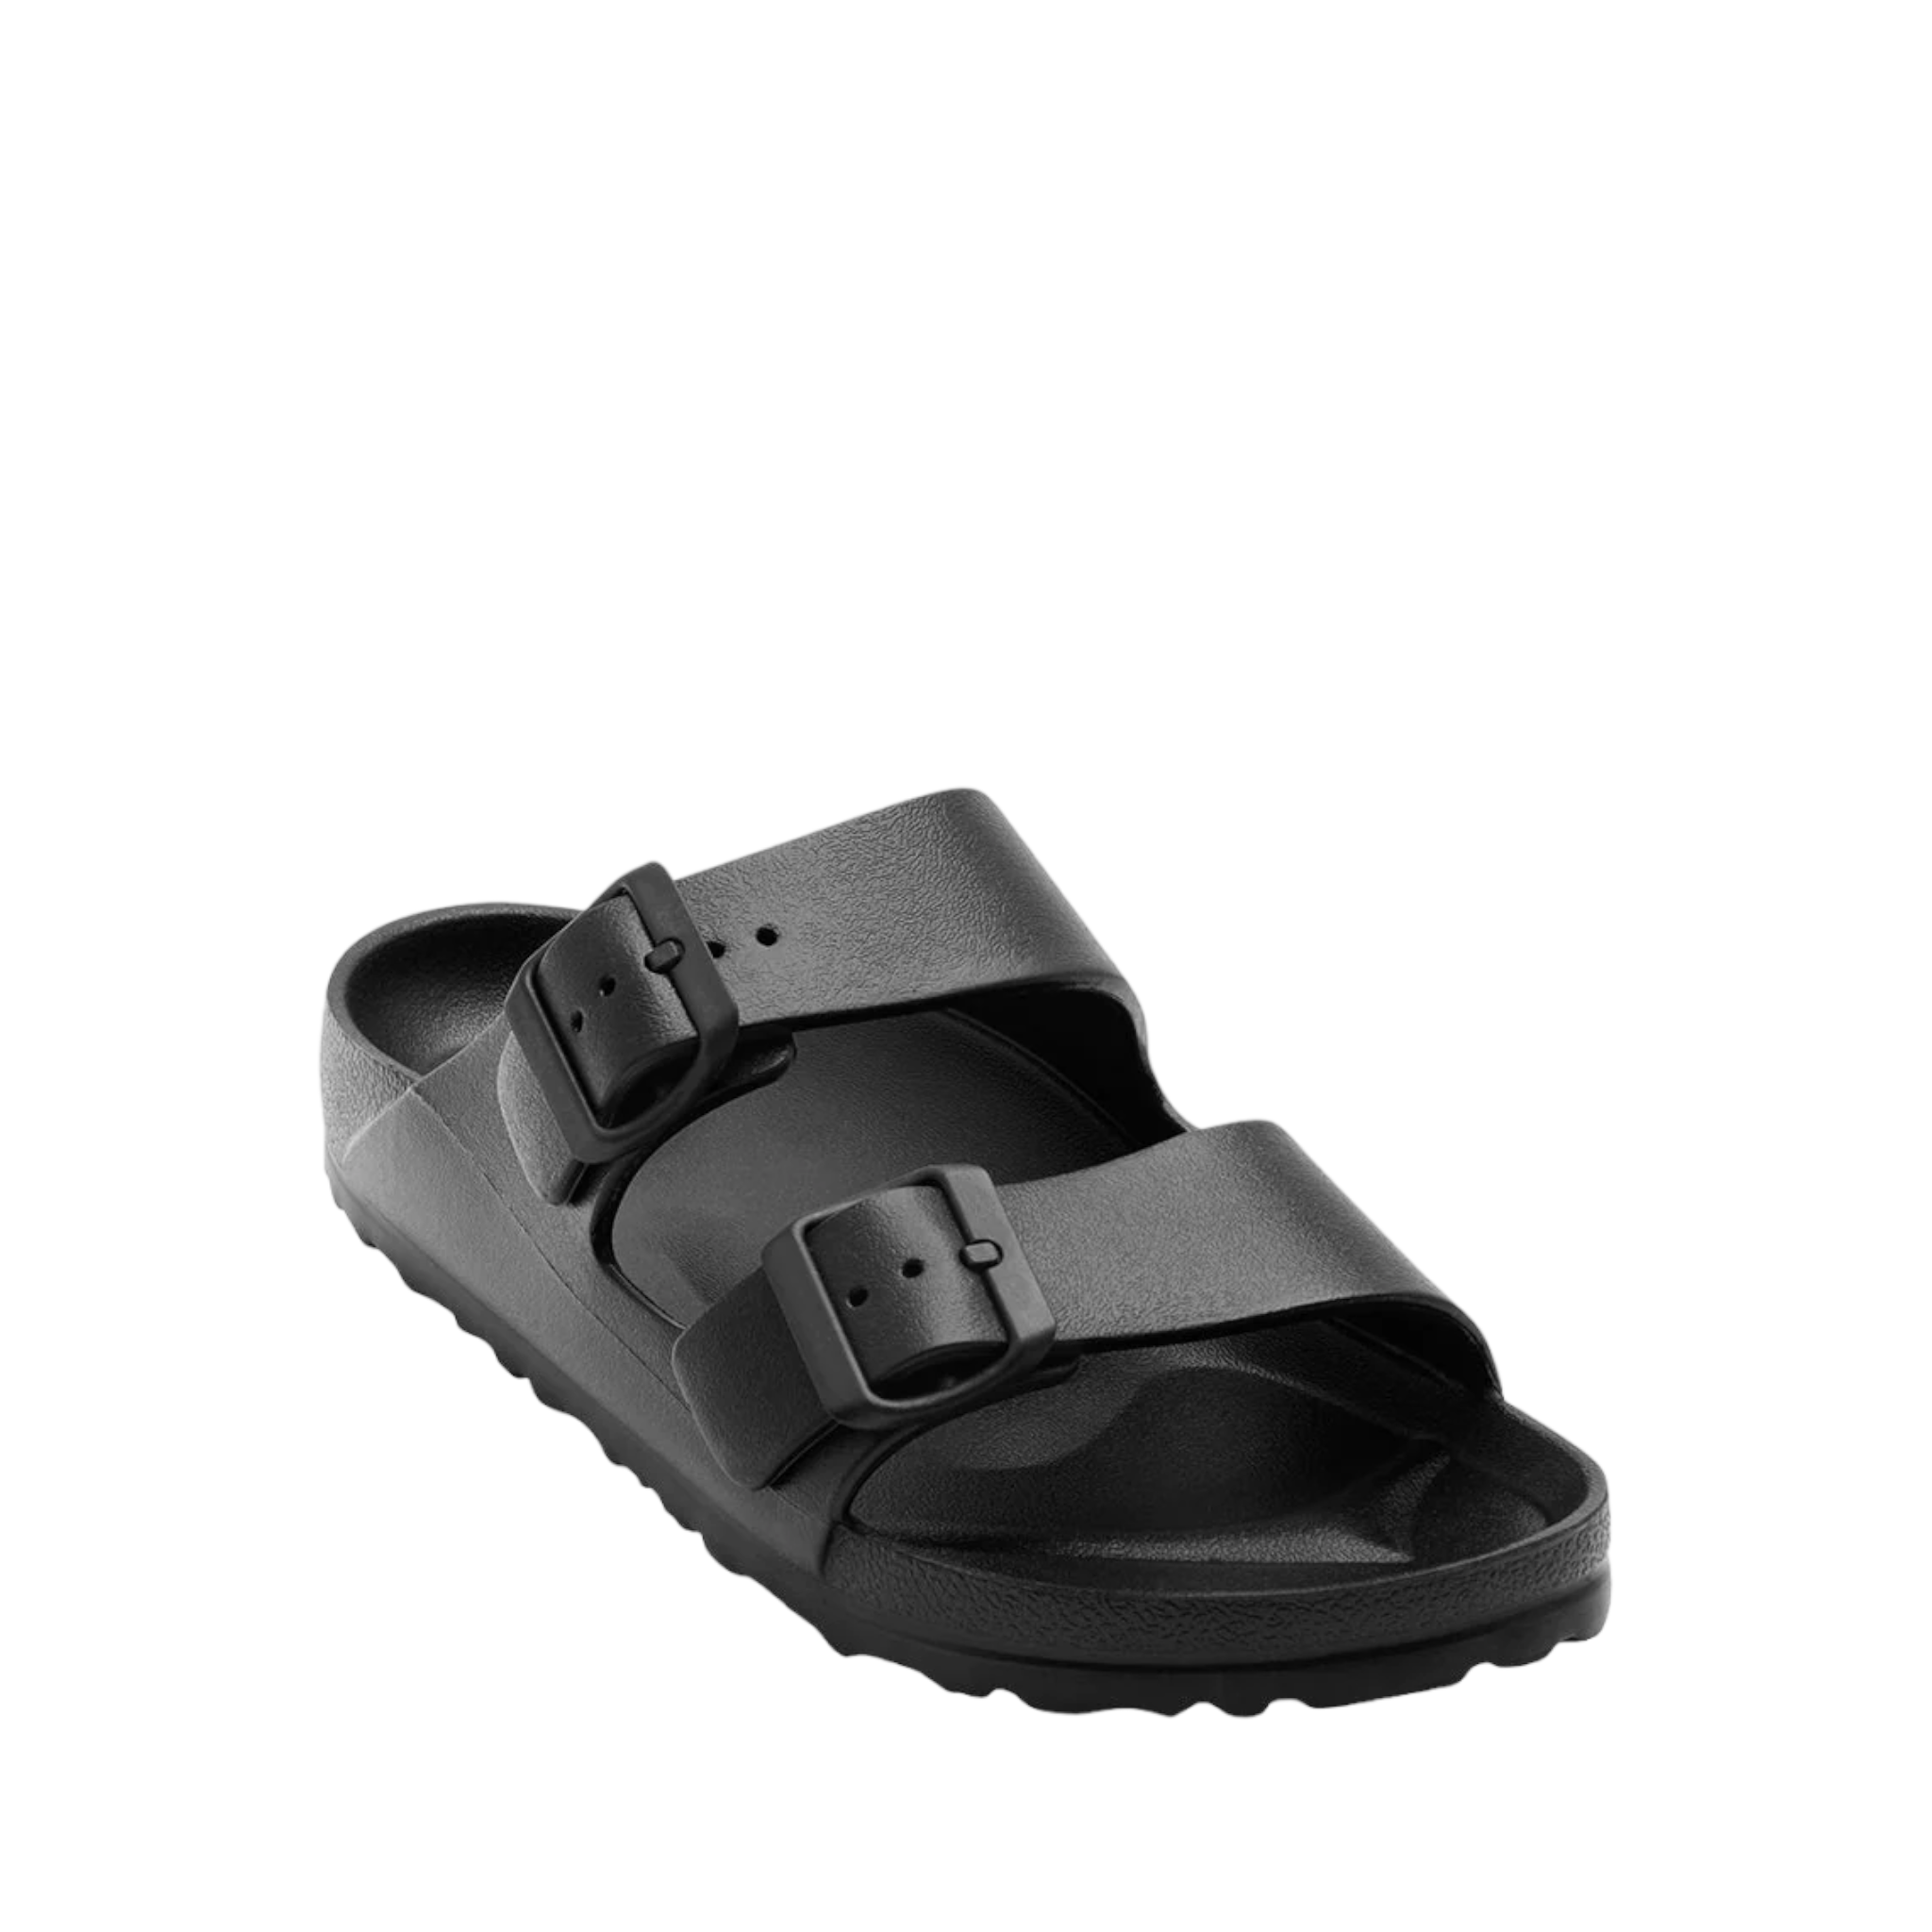 Sundreamer - shoe&me - Holster - Slide - Sandals, Slides/Scuffs, Summer, Vegan, Womens